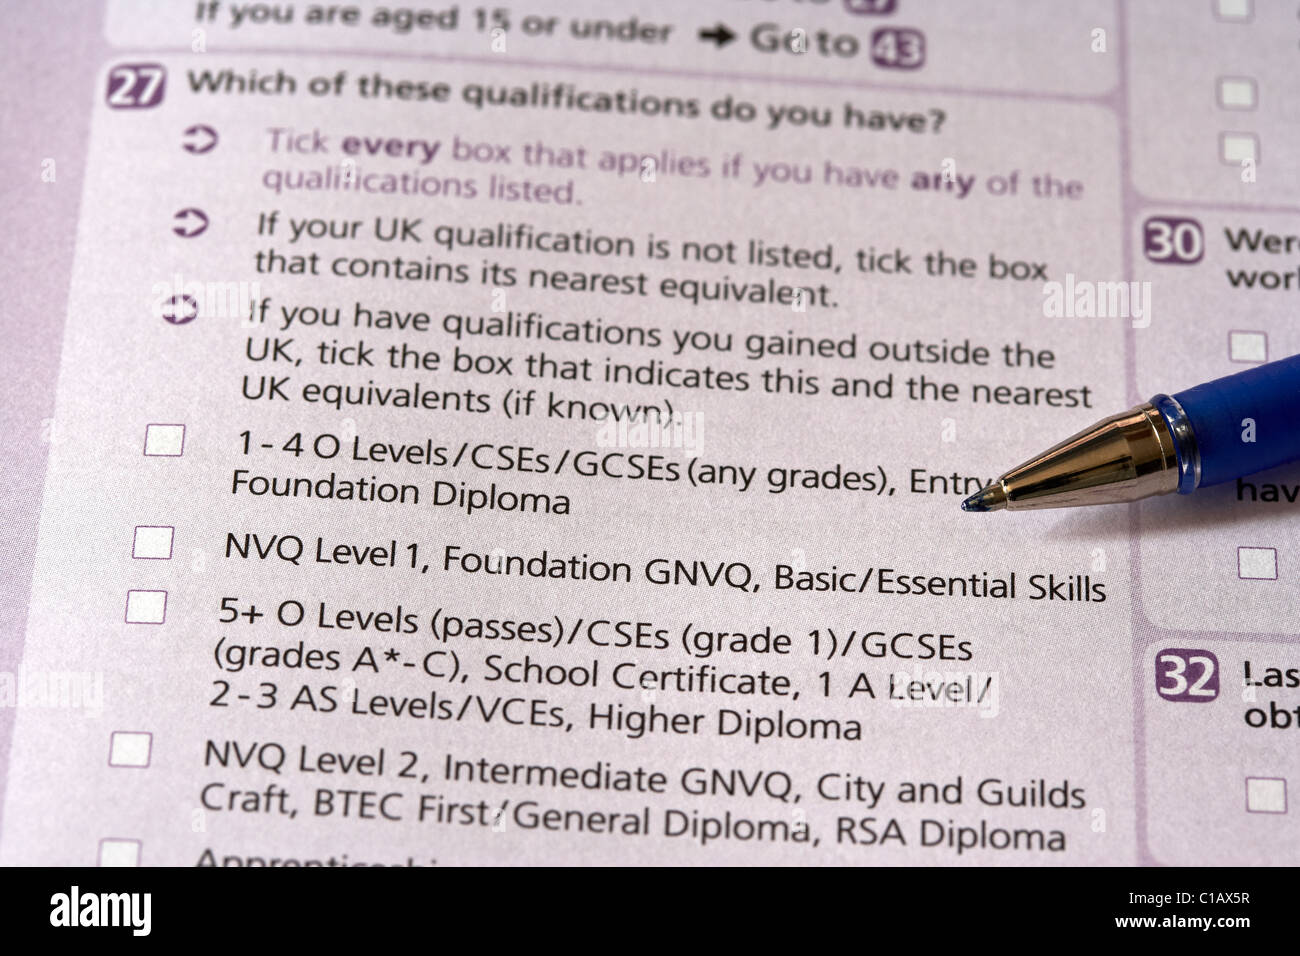 Las calificaciones educacionales pregunta sobre el Reino Unido los formularios del censo 2011 publicado en Irlanda del Norte Foto de stock